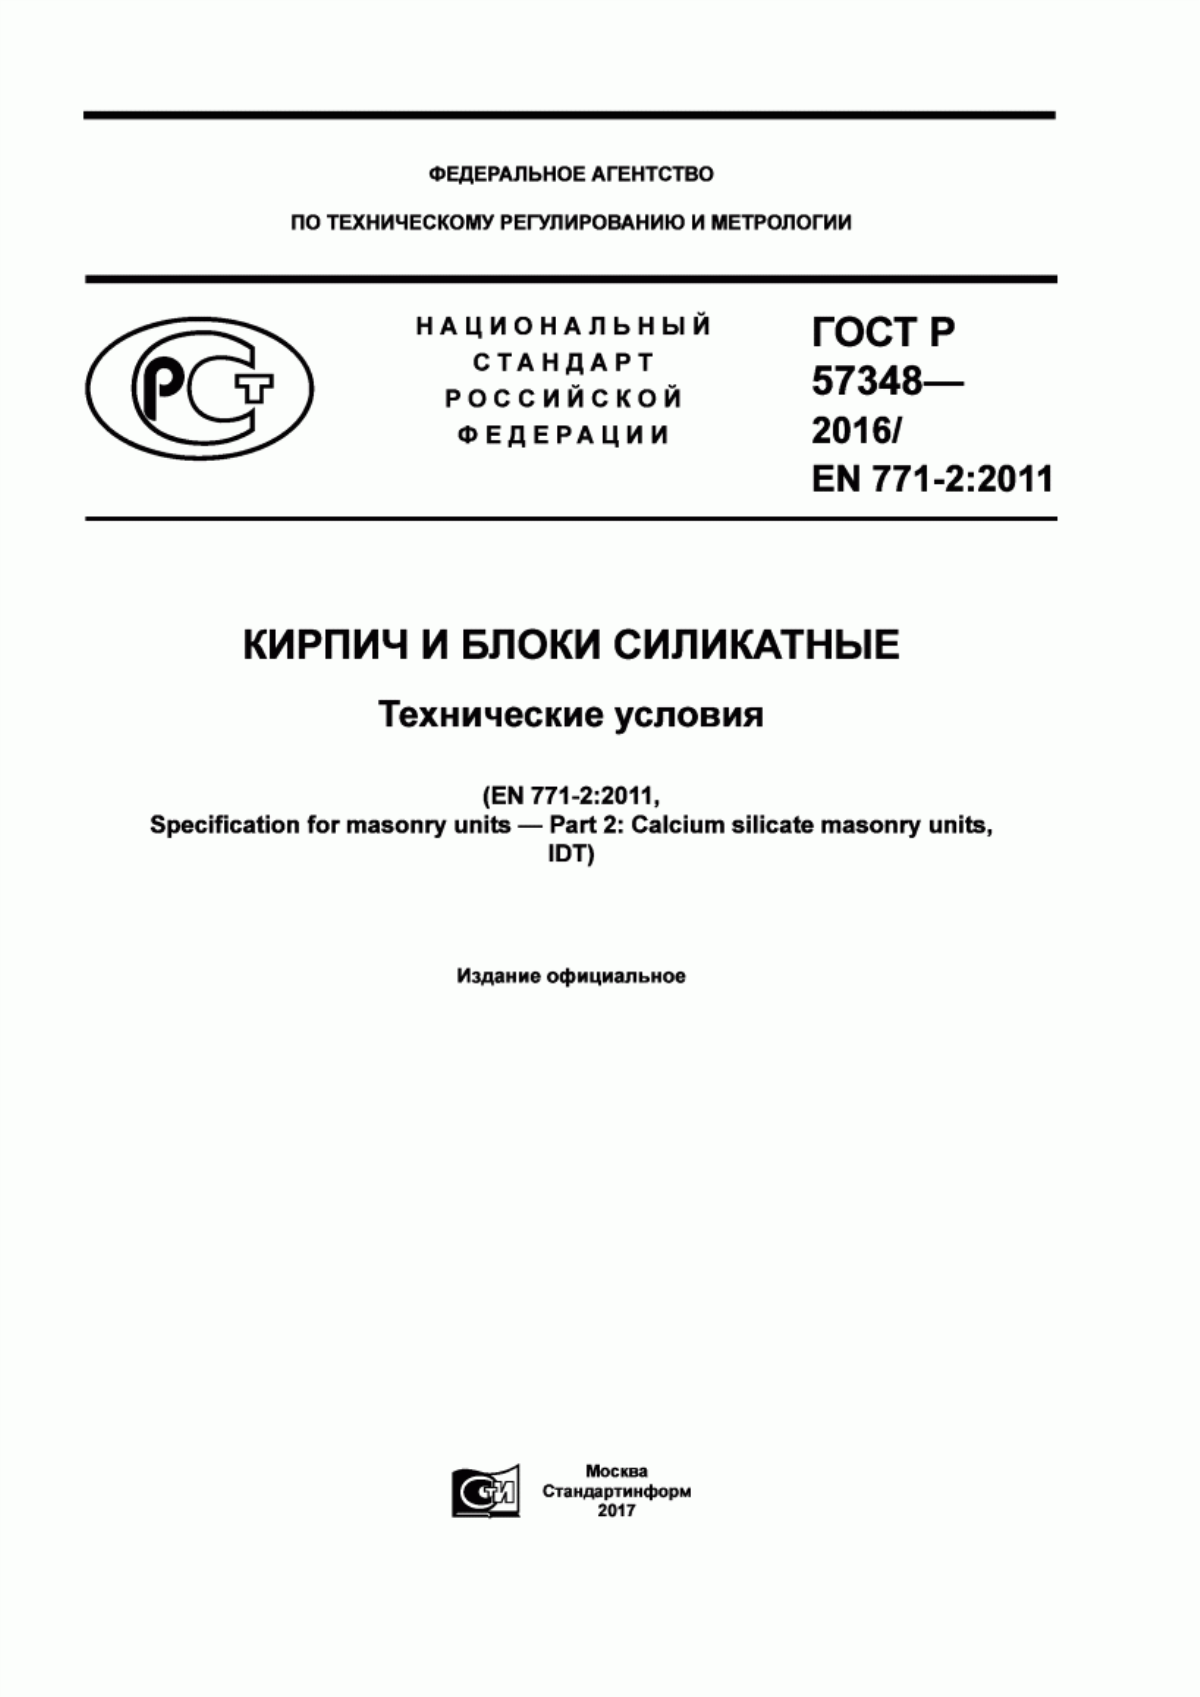 ГОСТ Р 57348-2016 Кирпич и блоки силикатные. Технические условия